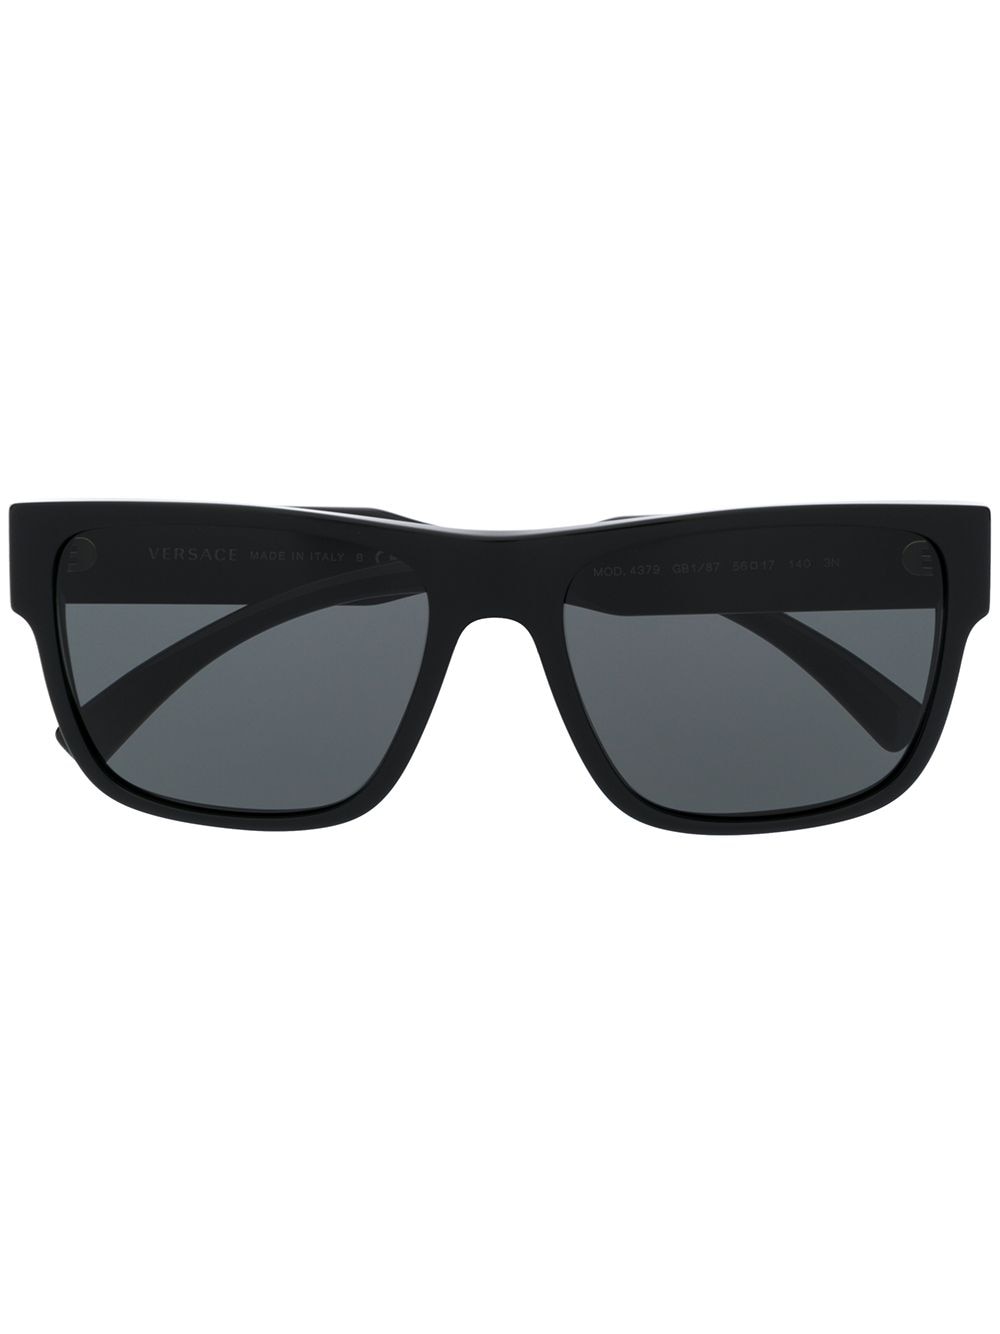 фото Versace Eyewear солнцезащитные очки с логотипом